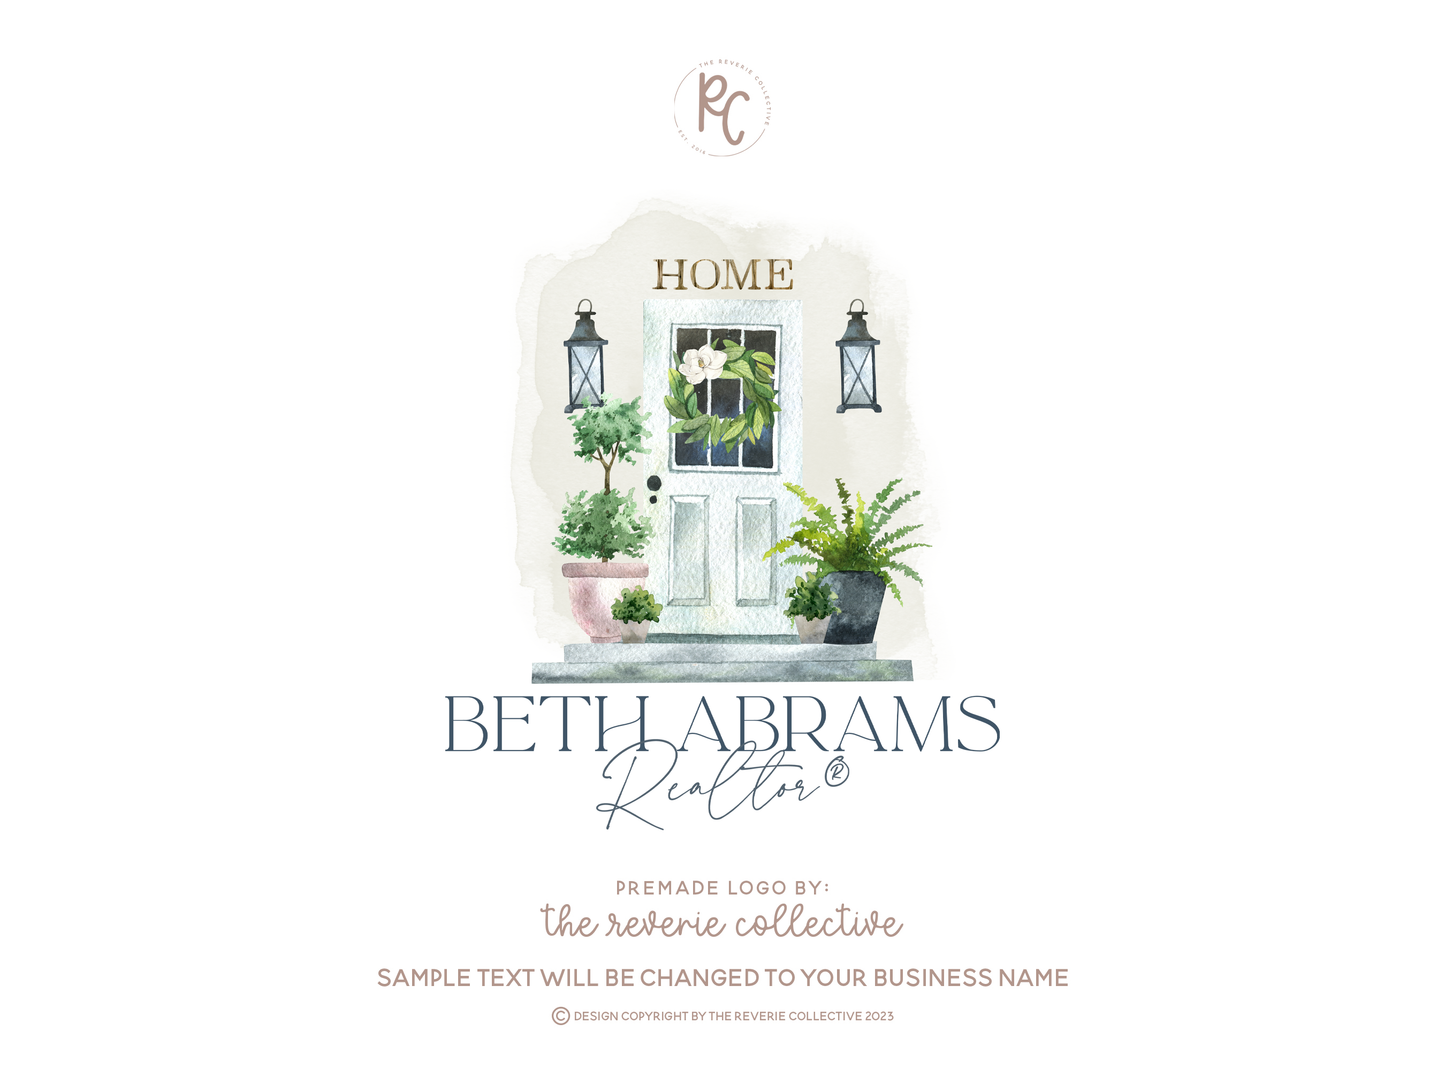 Beth Abrams | Premade Logo Design | Front Porch, Door, Real Estate, Realtor, House, Home